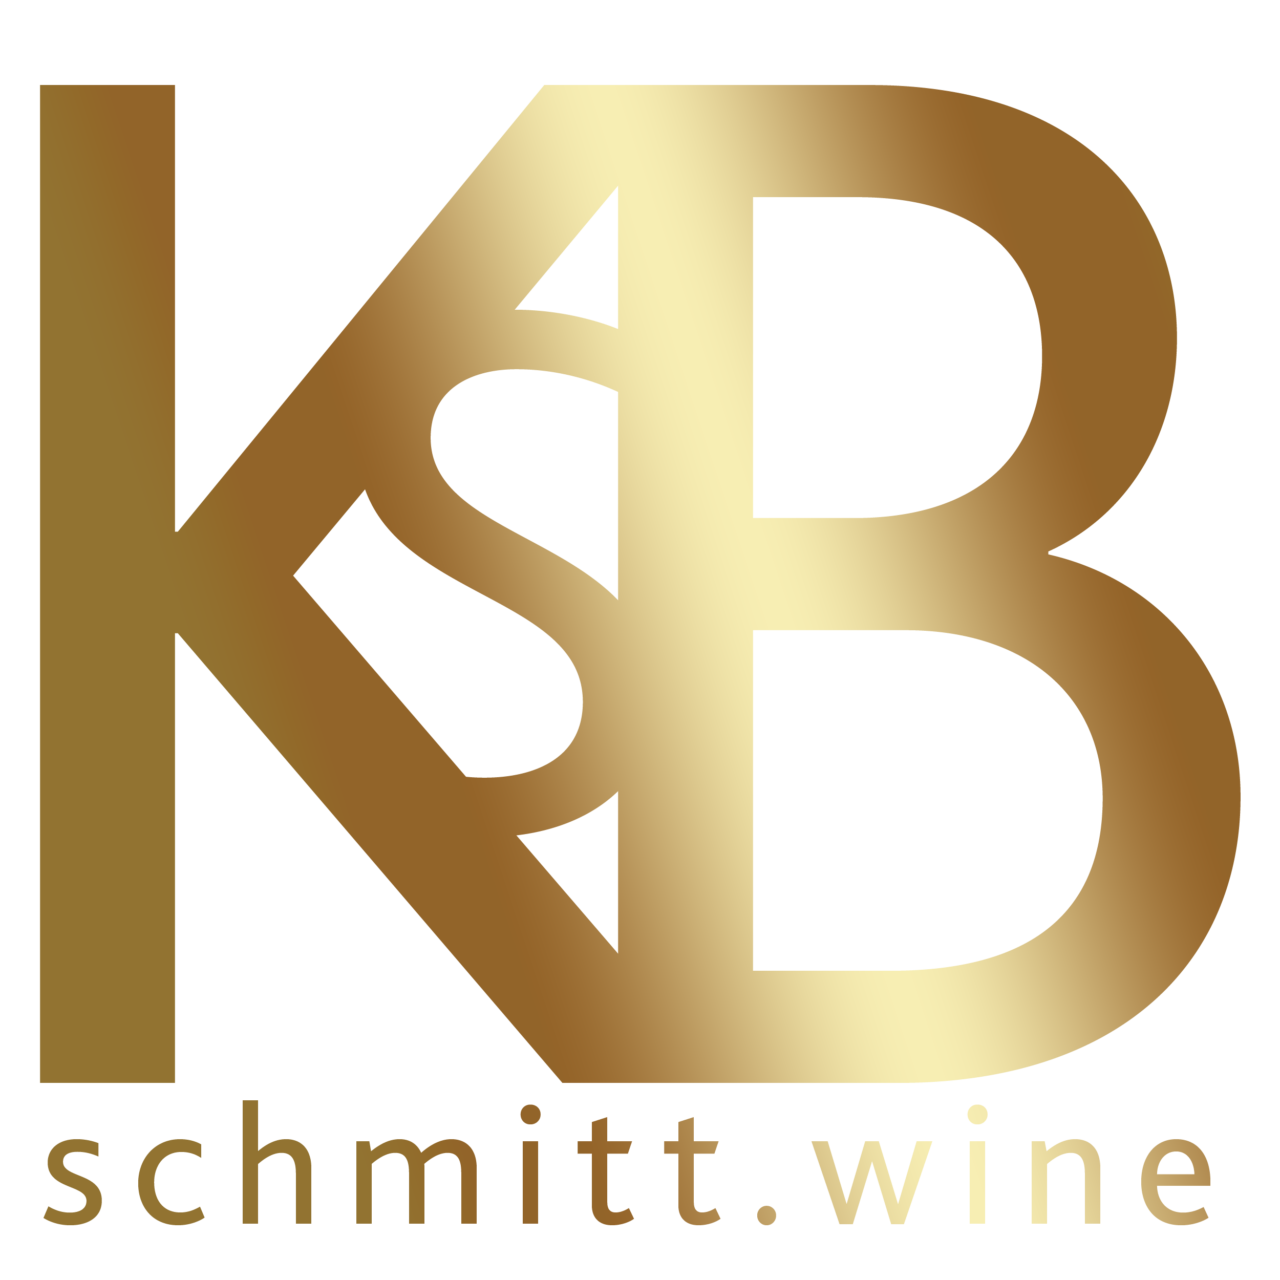 KSB Schmitt